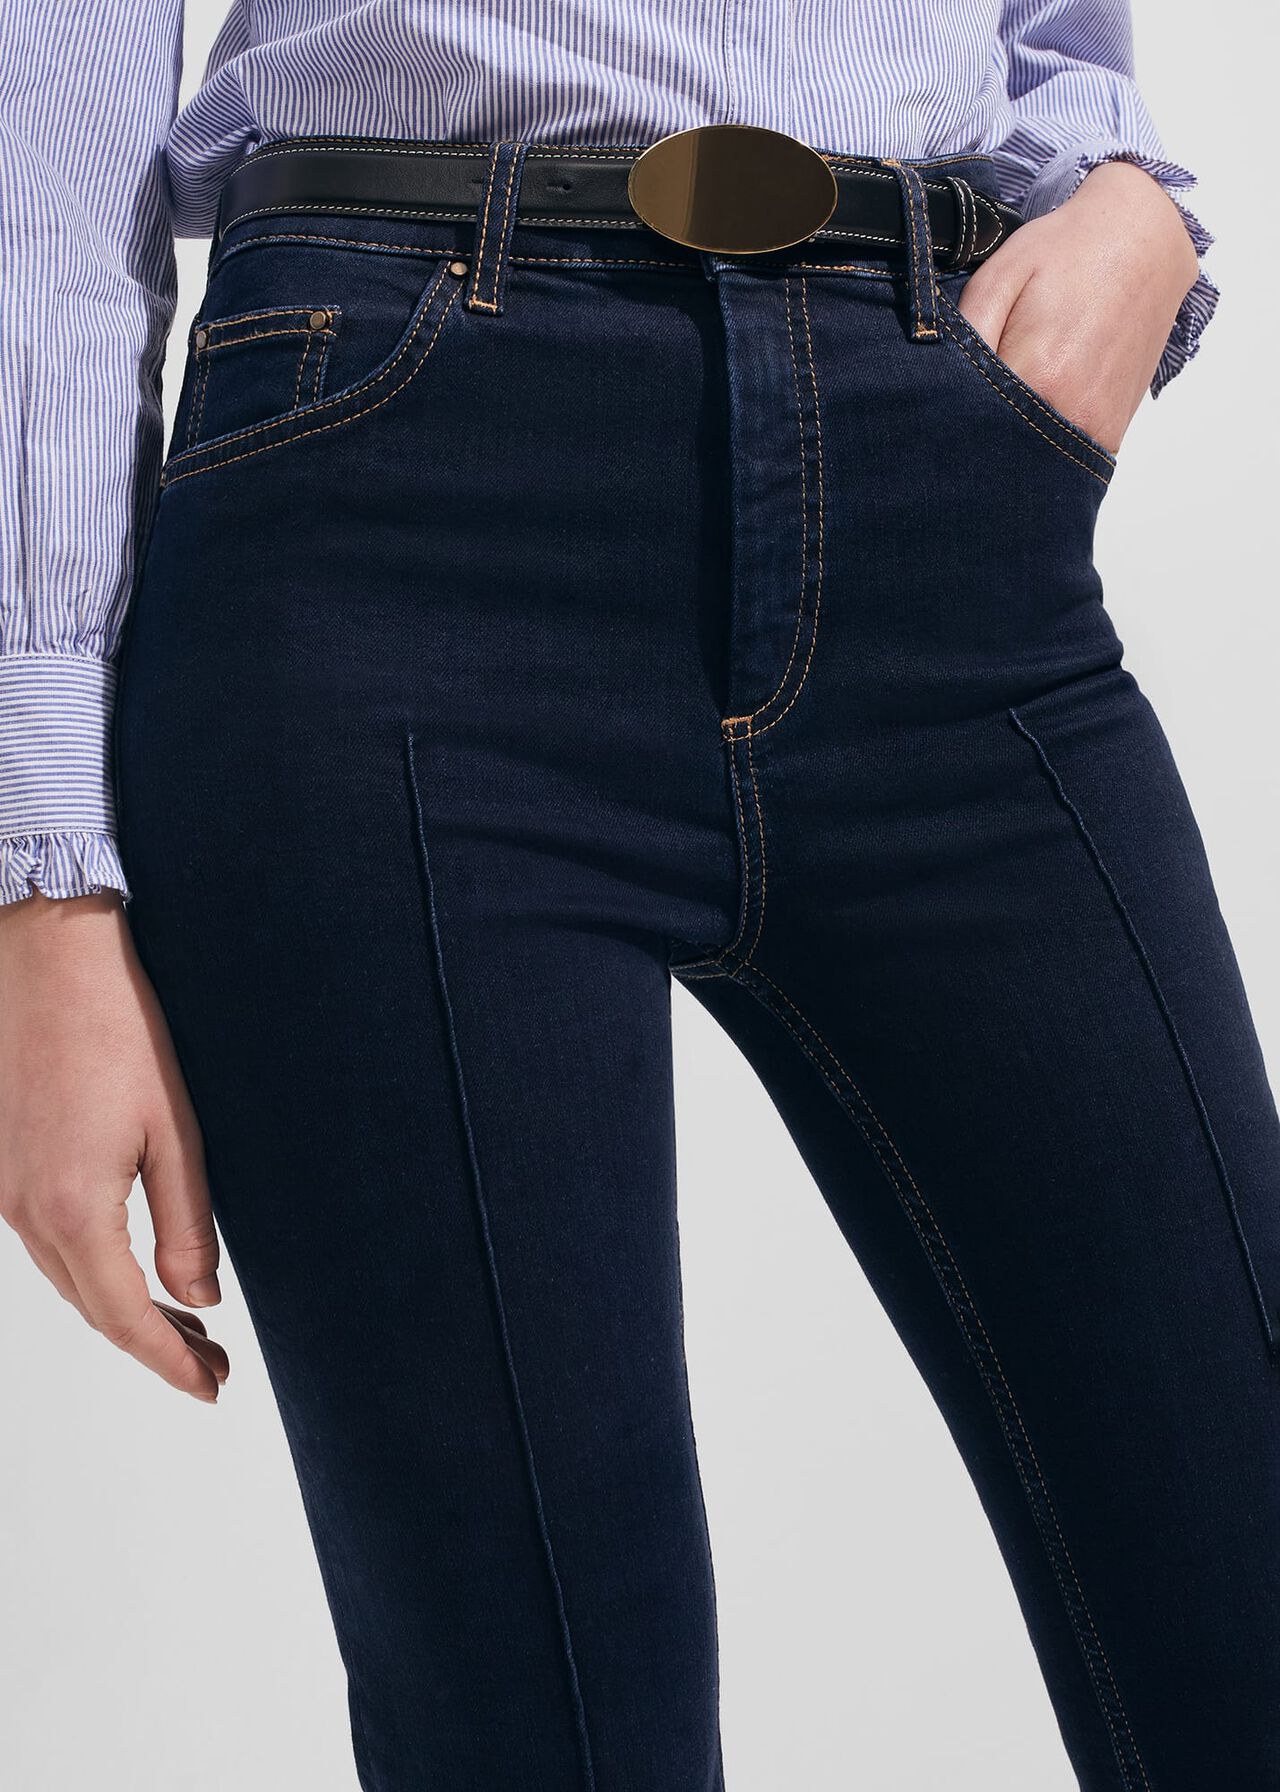 Niomi Pinseam Jeans, Indigo, hi-res